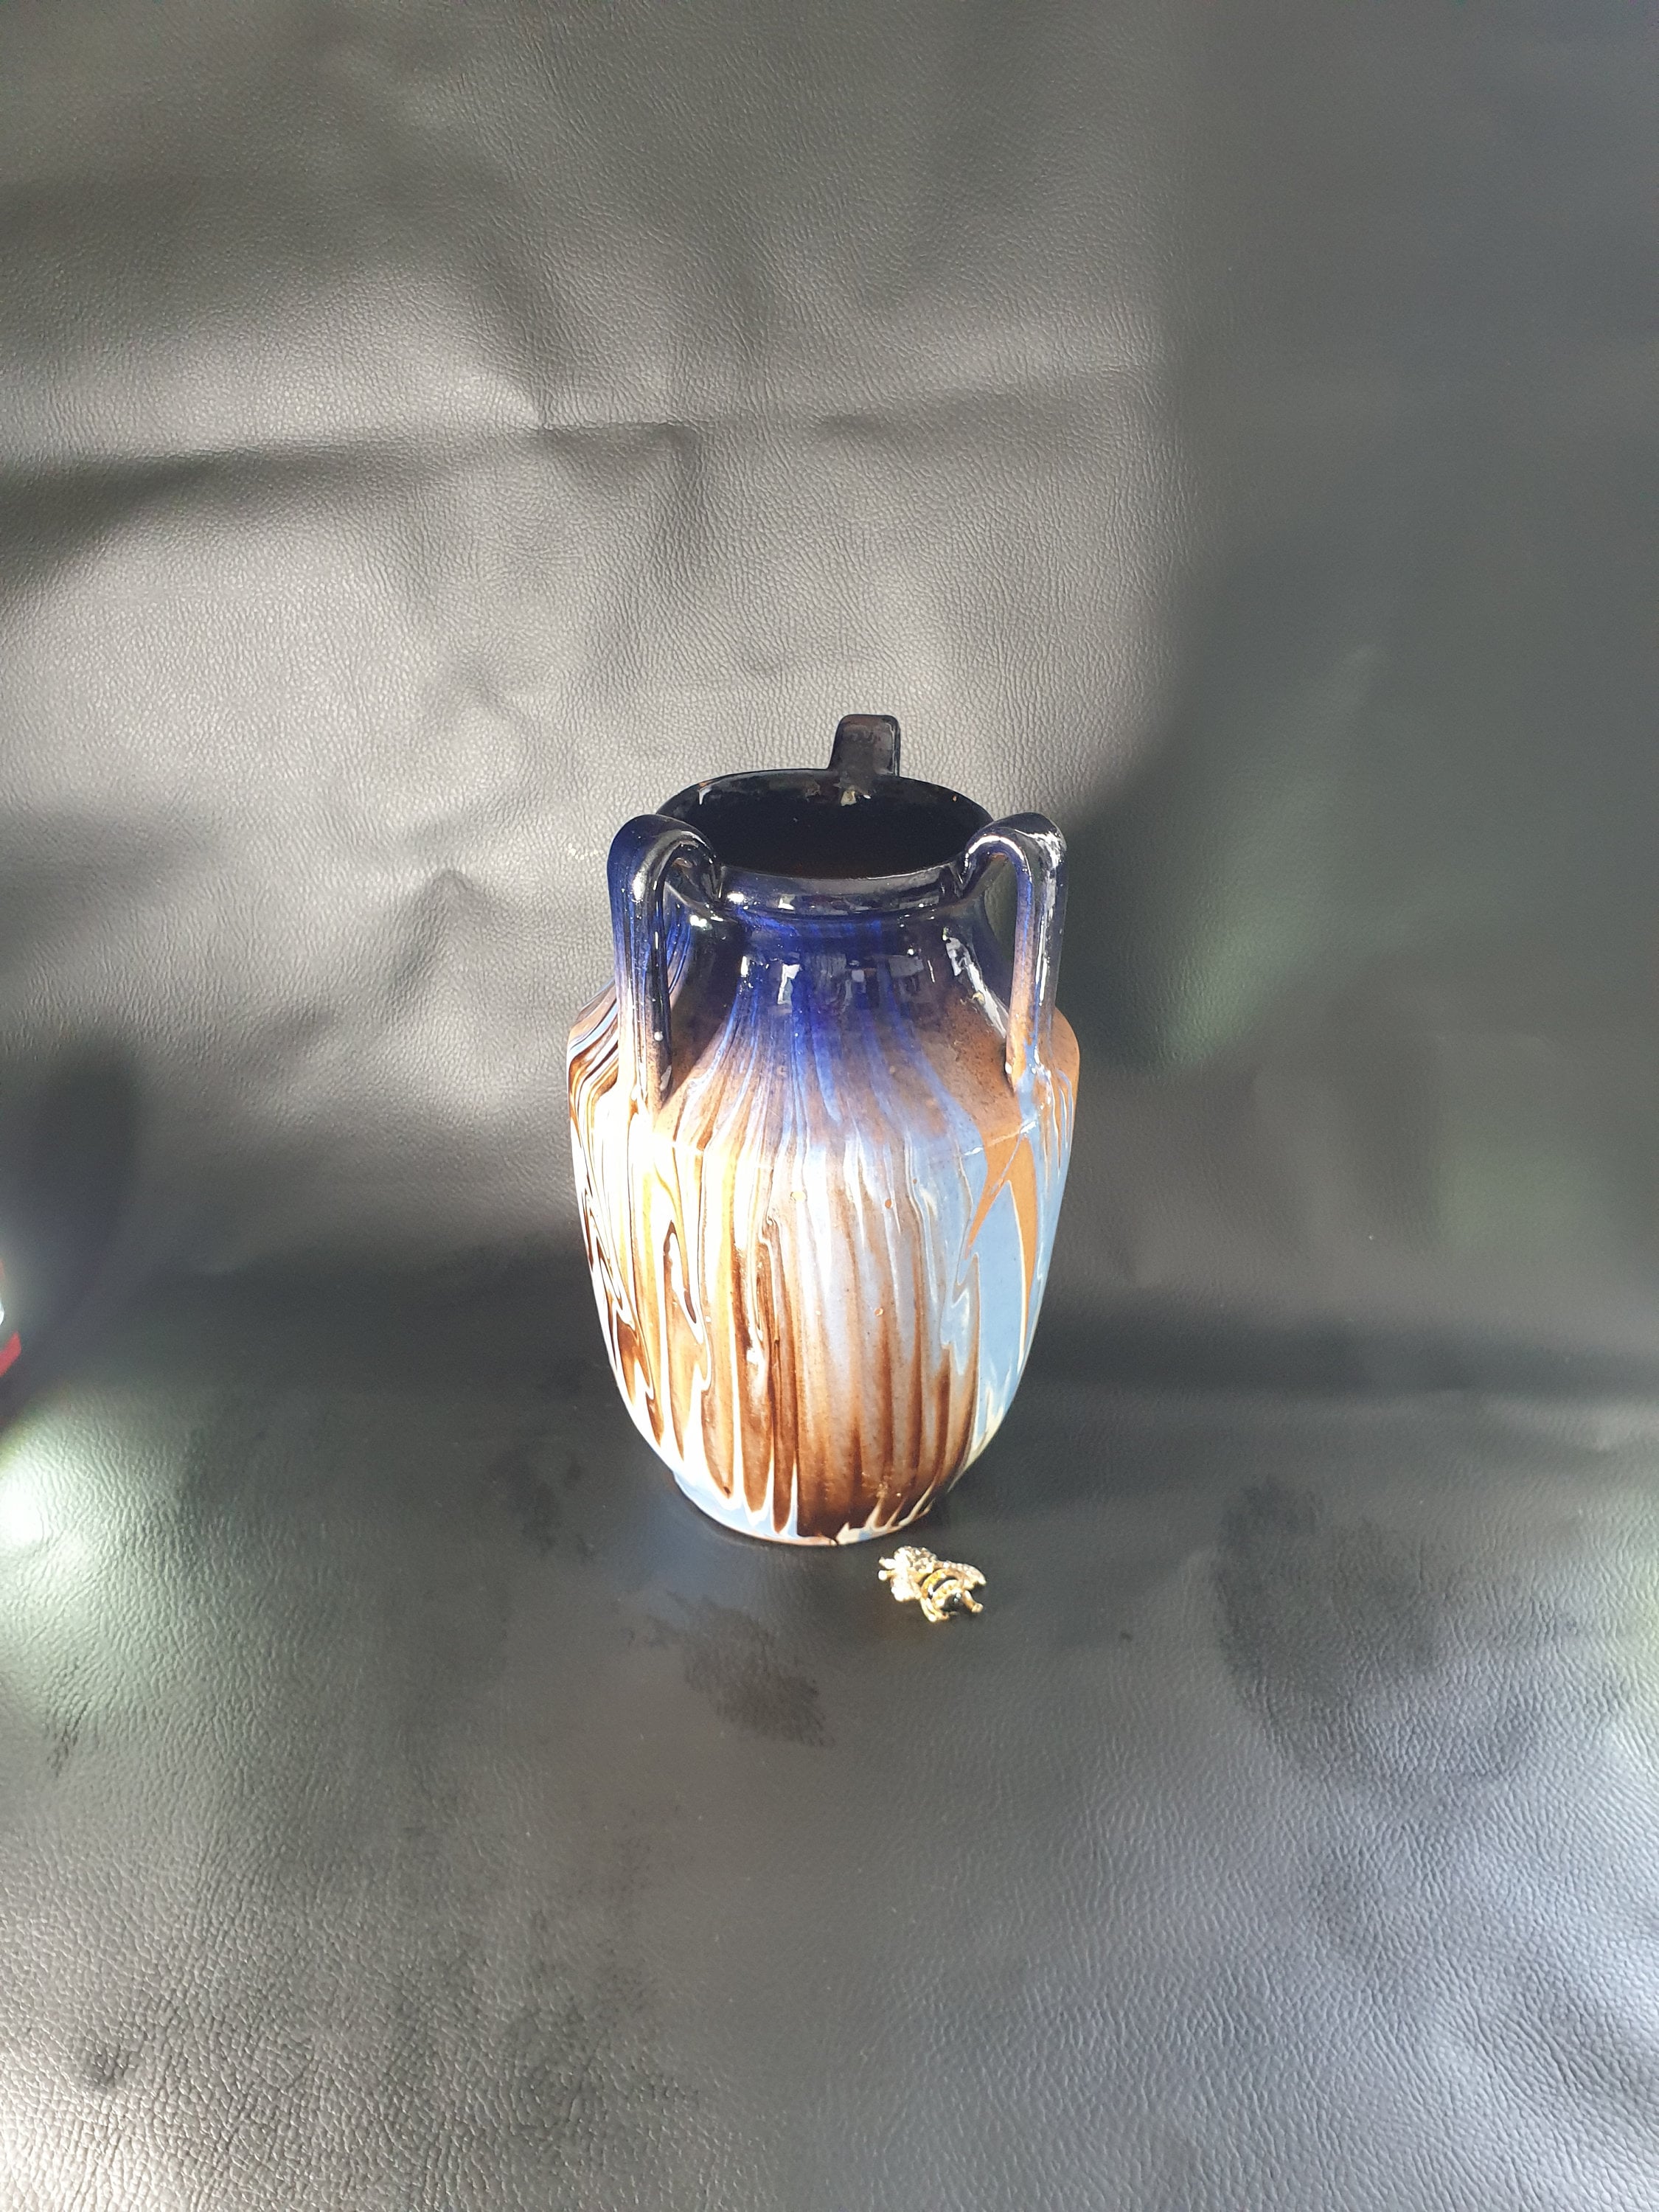 Pichet en Céramique Ornée, Pichet Brun Bleu Blanc, Grès, Vase Céramique, Vintage